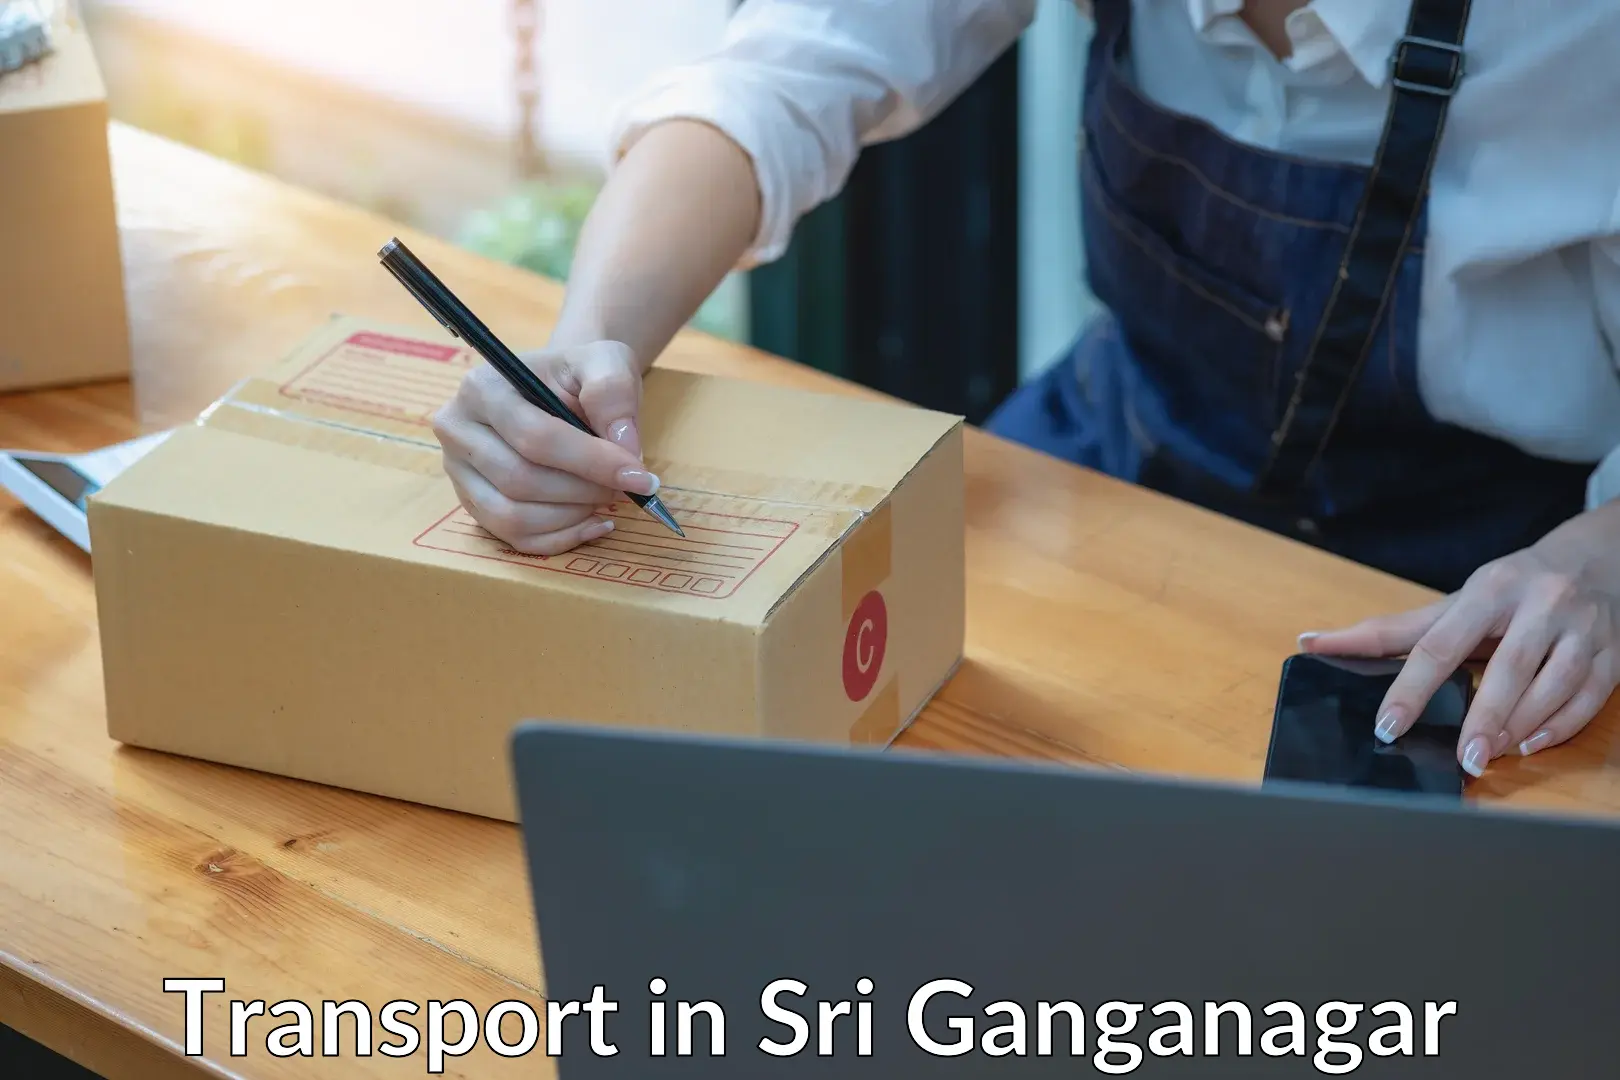 Furniture transport service in Sri Ganganagar